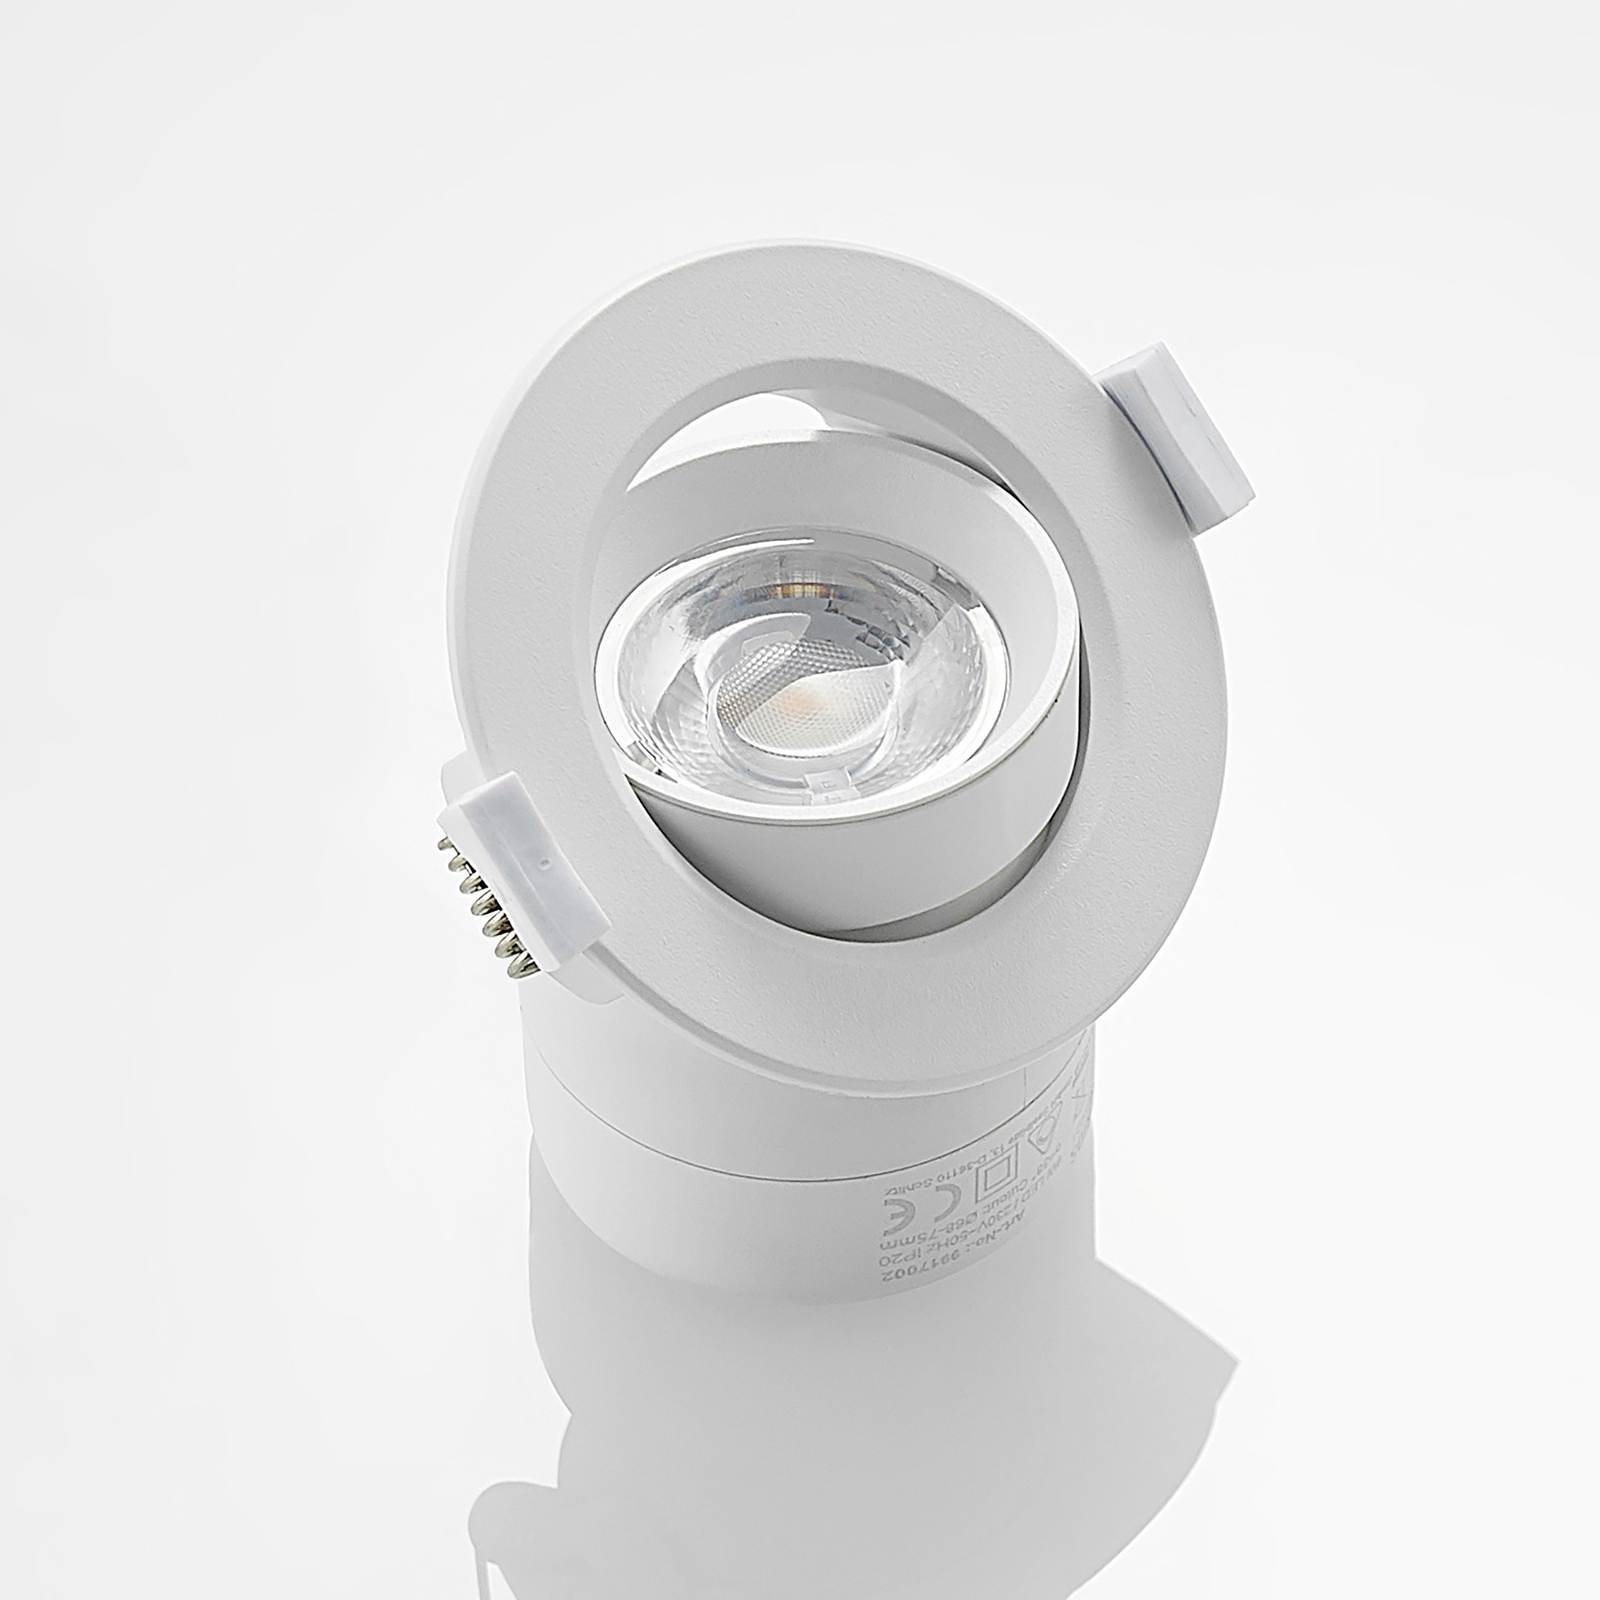 Prios LED лампа за вграждане Shima, бяла, 9W, 3000K, 2 броя, с възможност